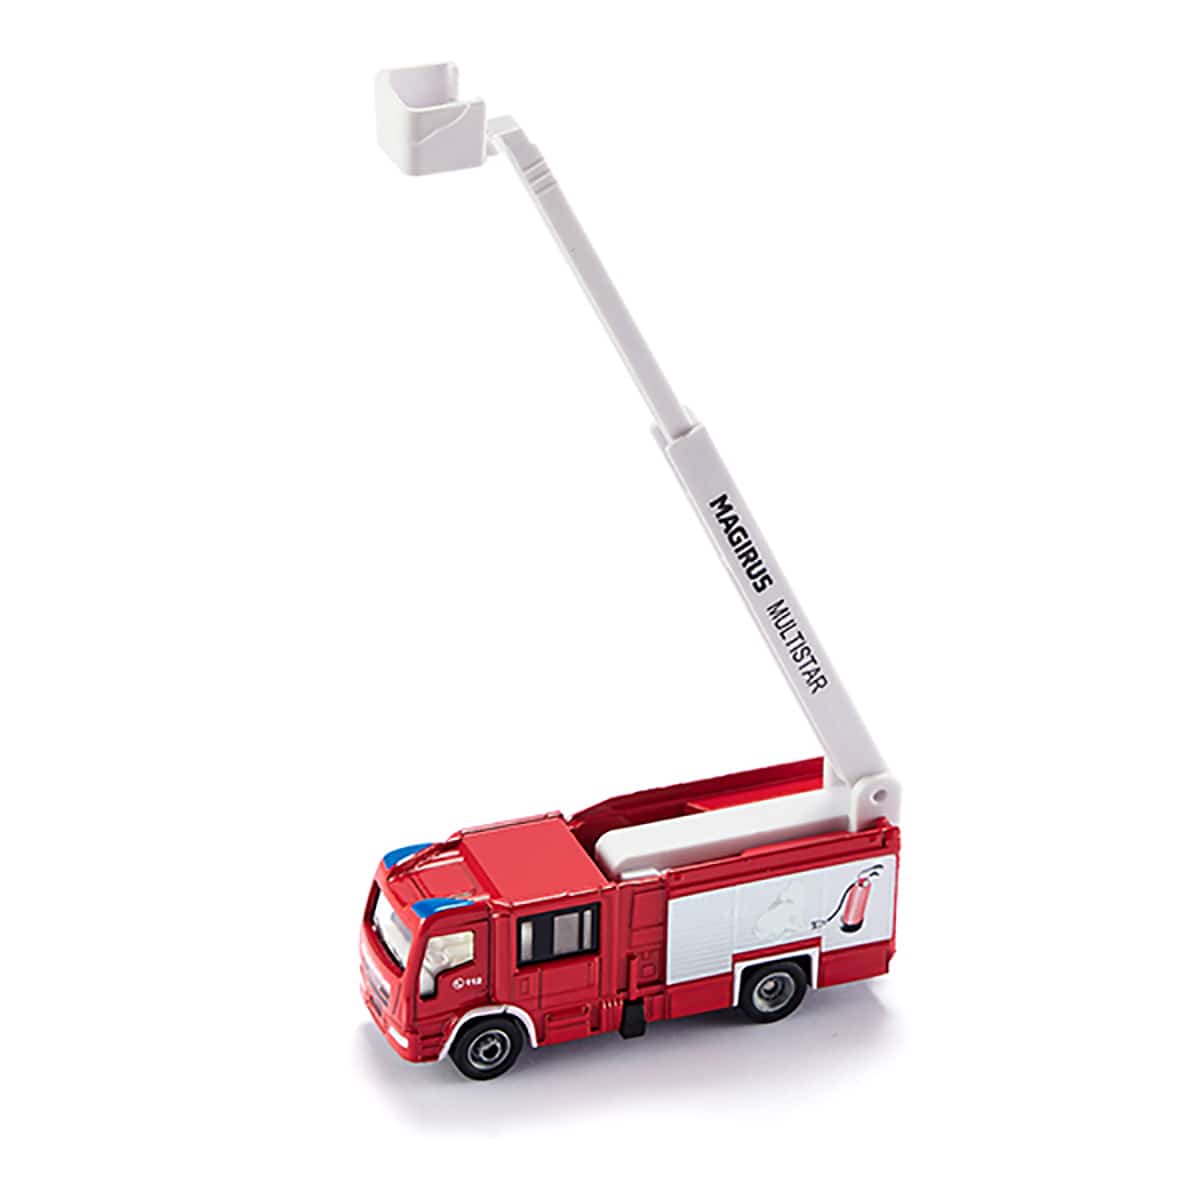 マギルス はしご付き消防車: ボーネルンド オンラインショップ。世界中の知育玩具など、あそび道具がたくさん。0歳からのお子様へのプレゼントにも。